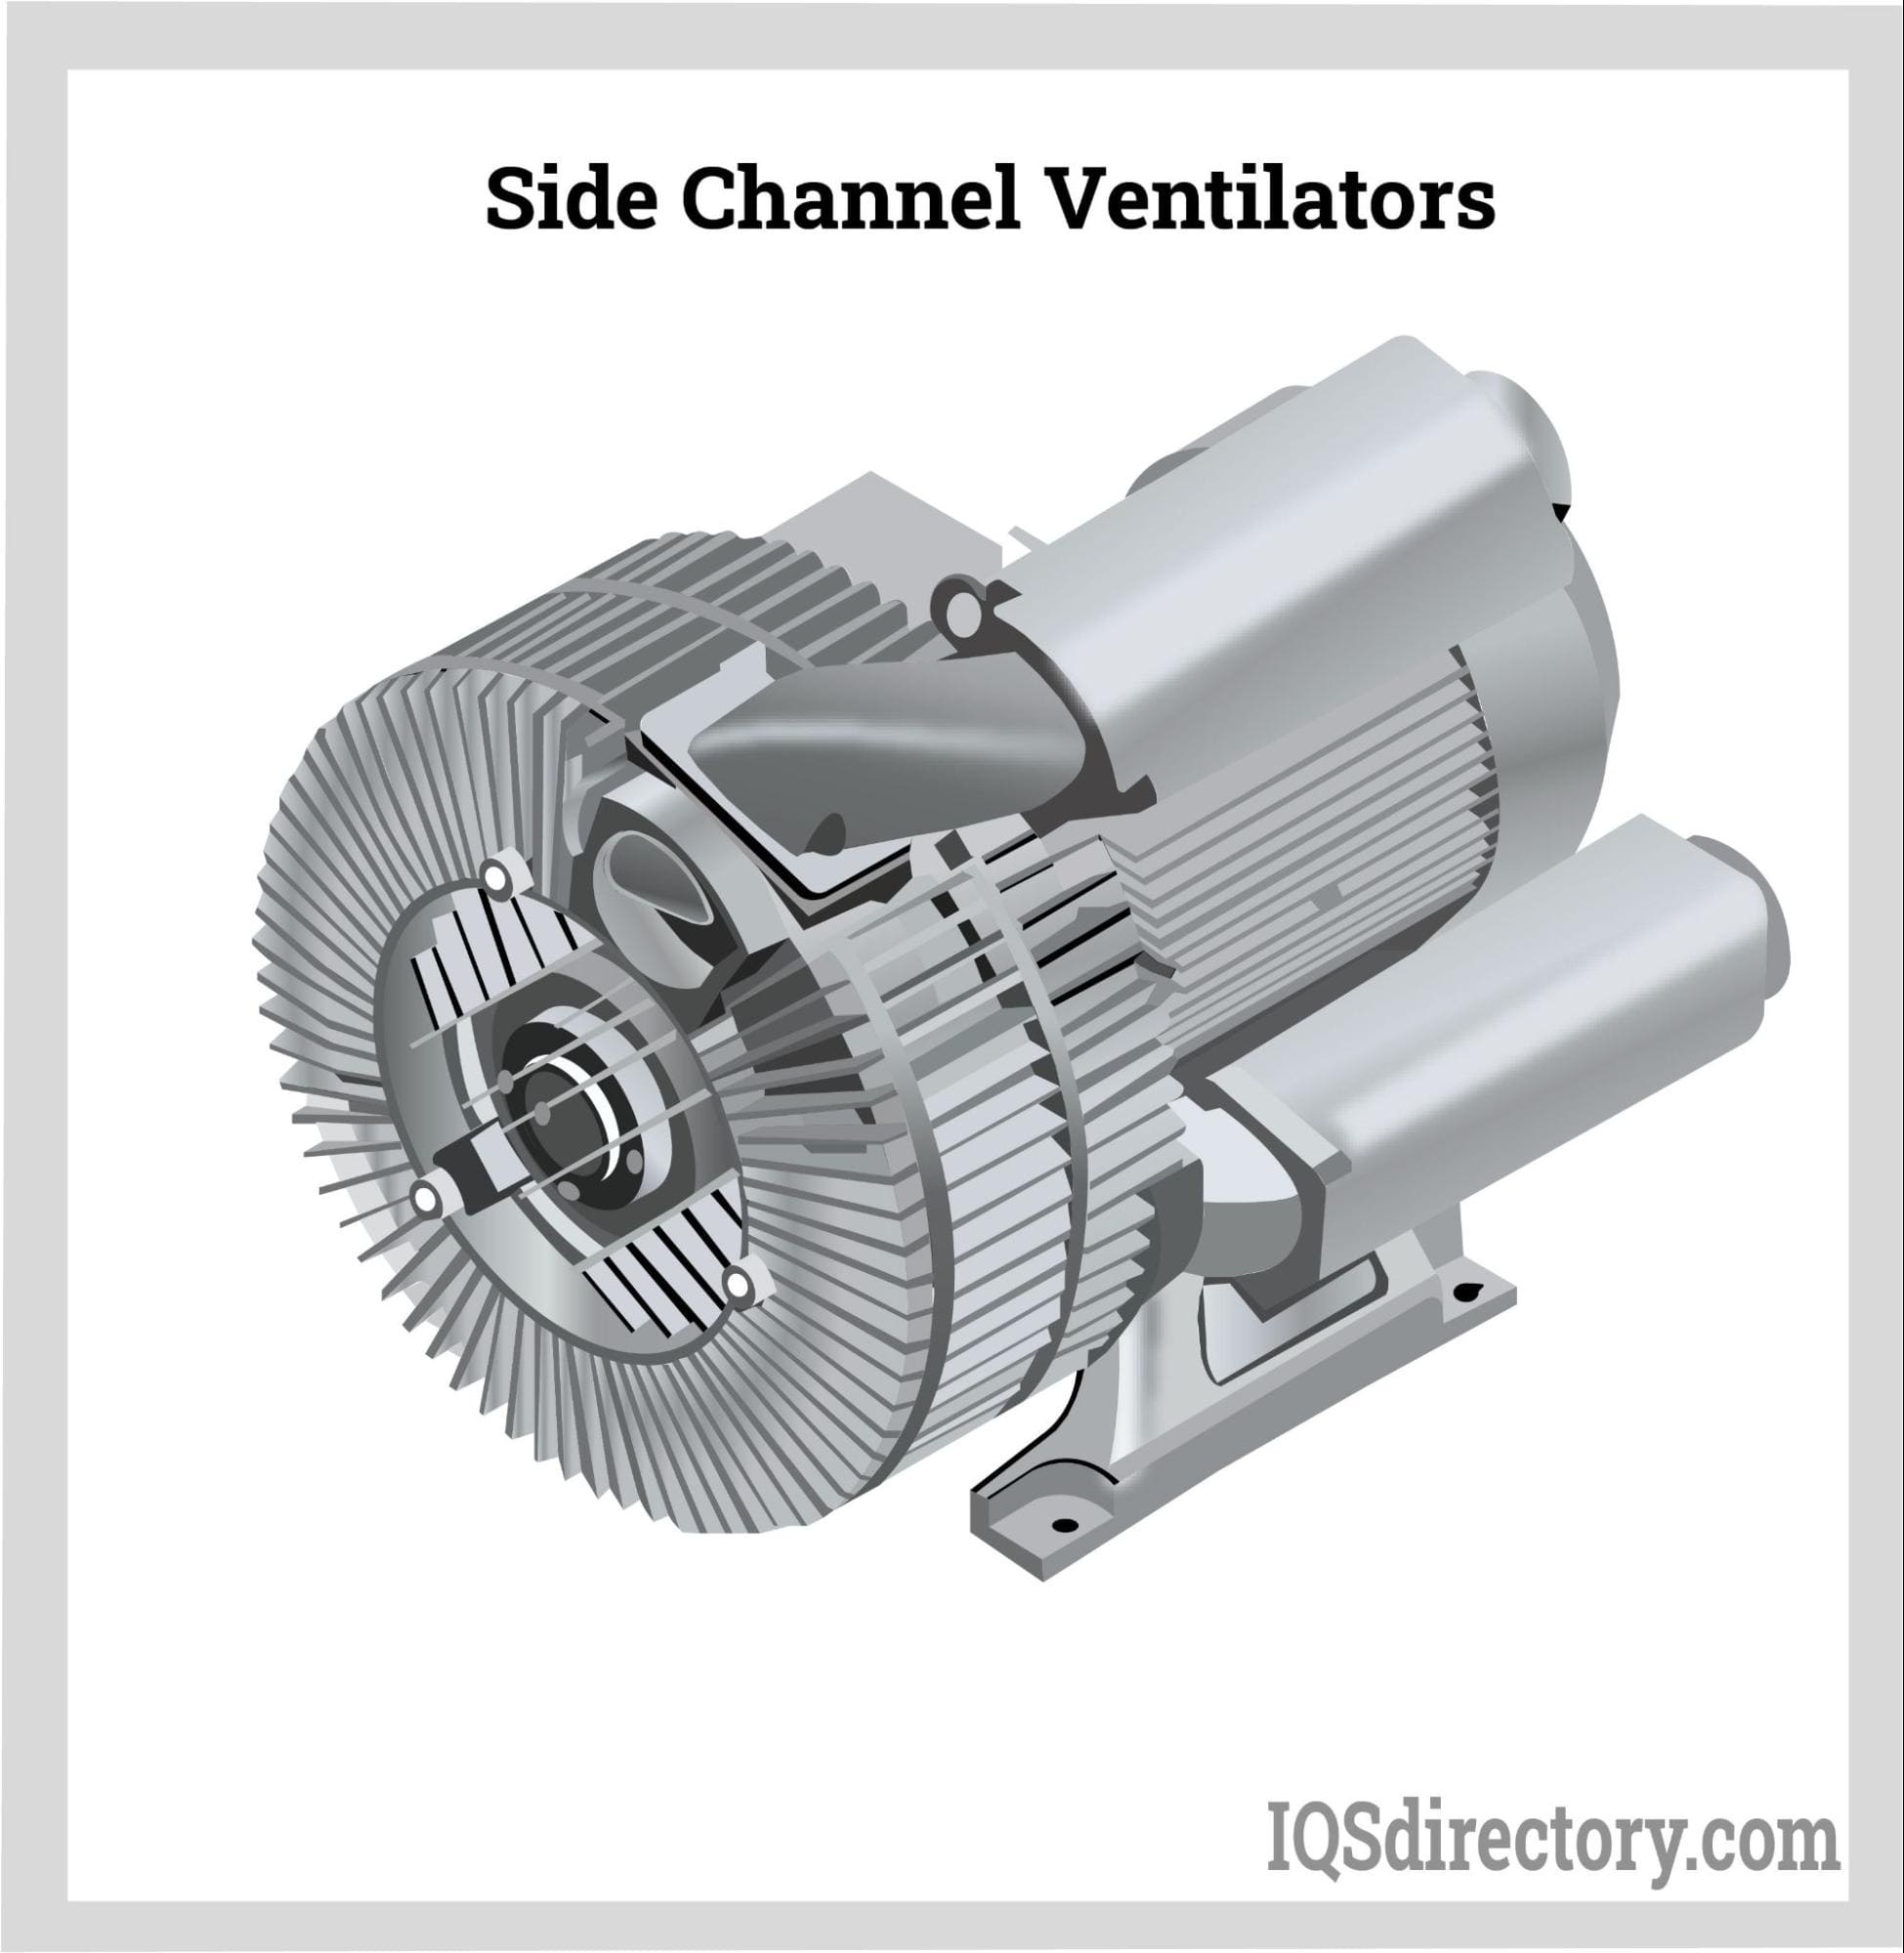 Side Channel Ventilators